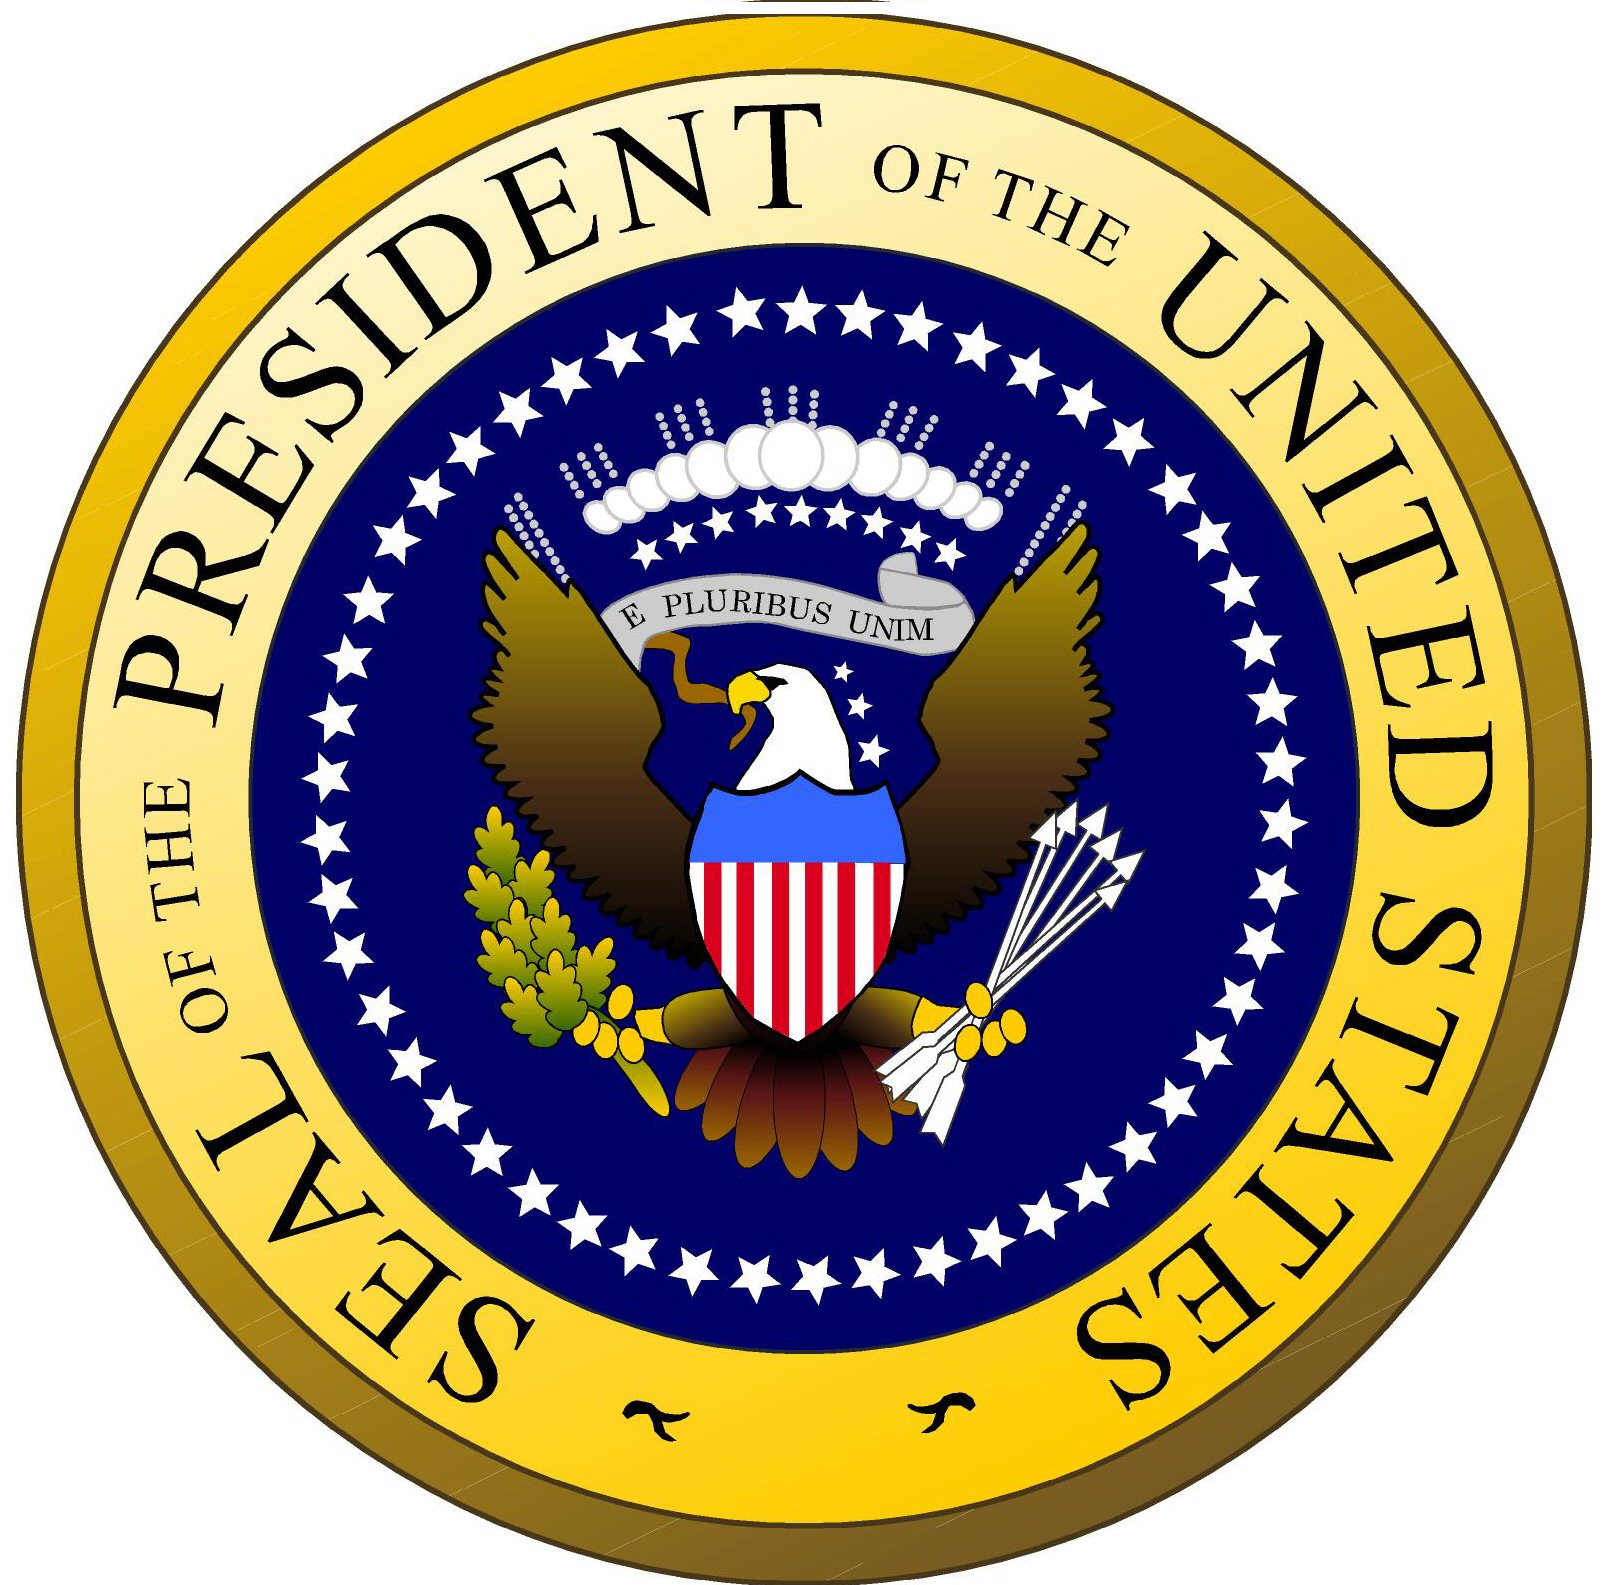 presidents logo